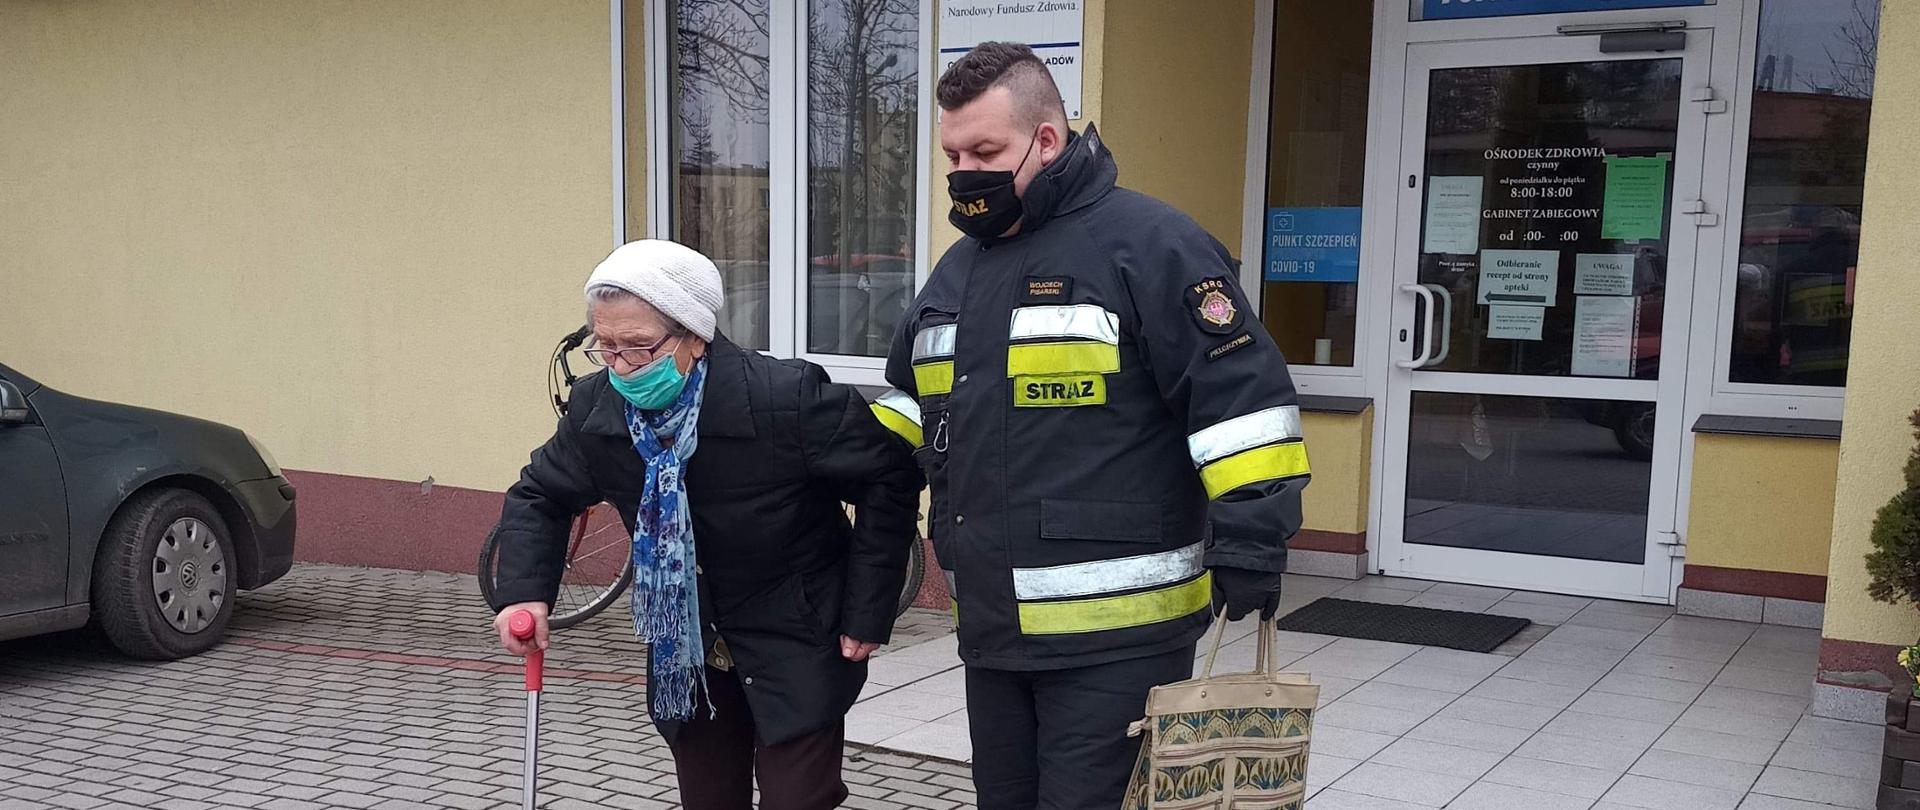 umundurowany strażak prowadzący starszą kobietę z budynku ośrodka zdrowia